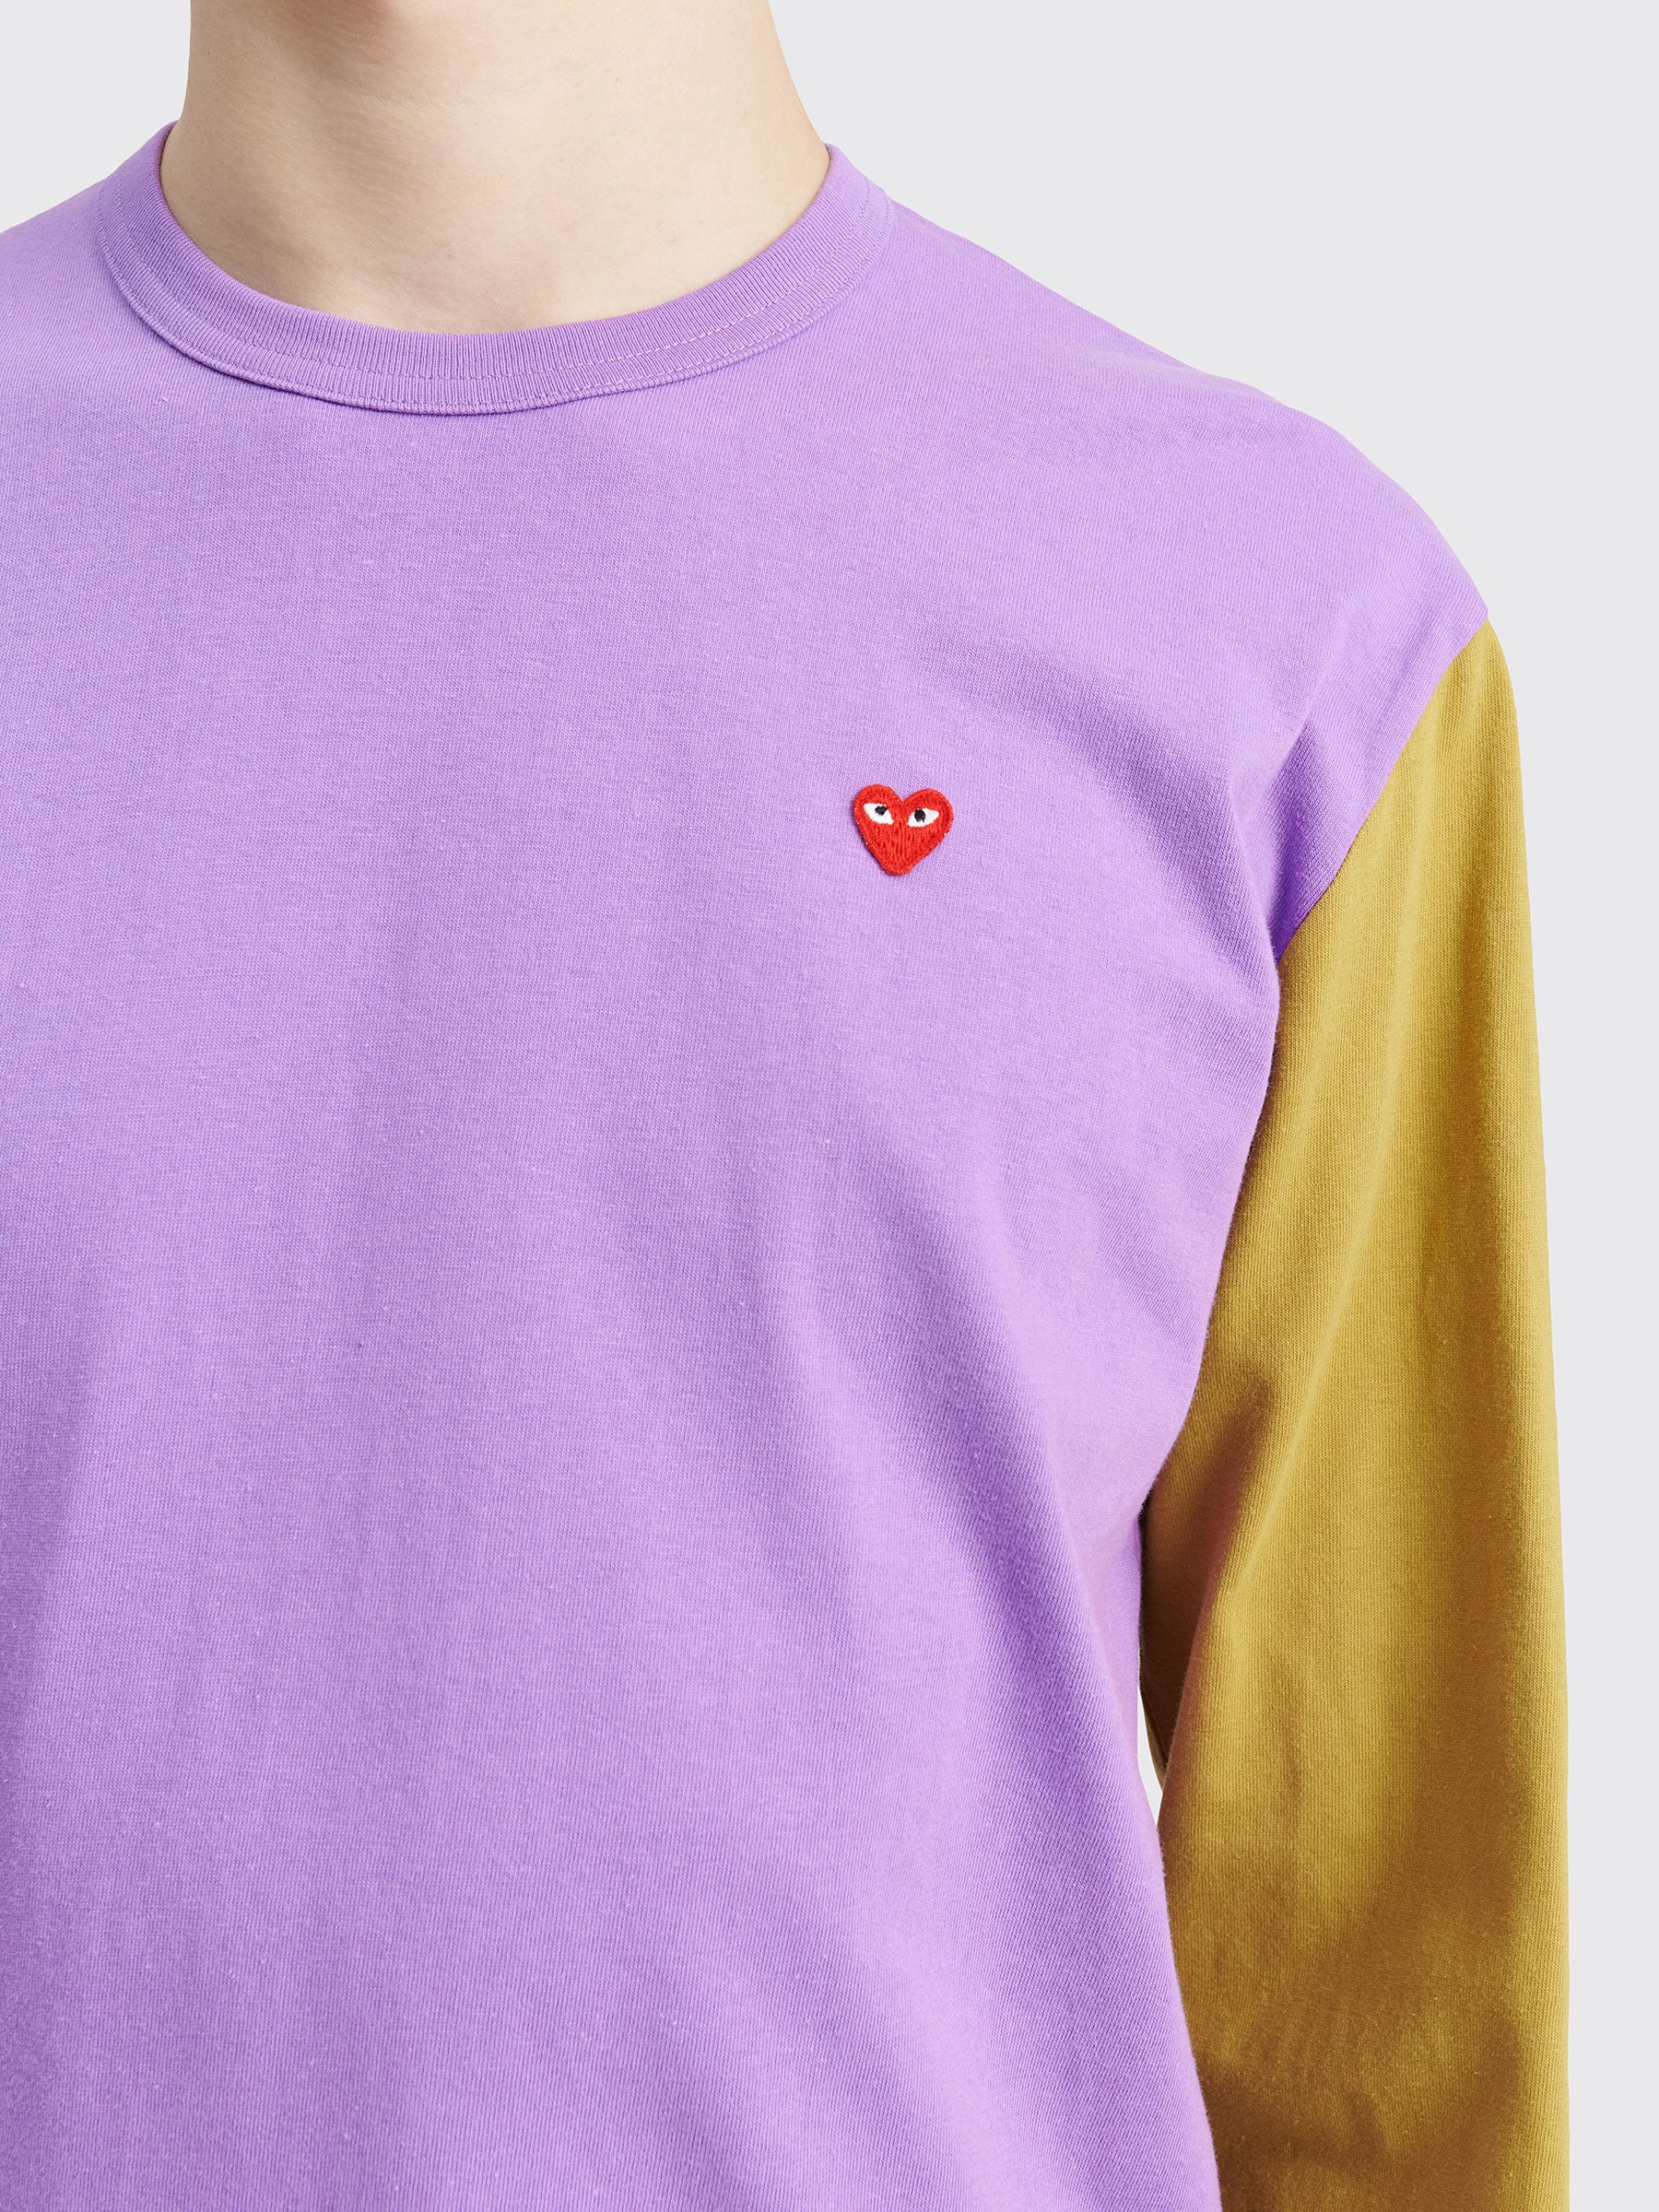 Comme des Garçons Play Mini Heart LS T-shirt Purple / Olive